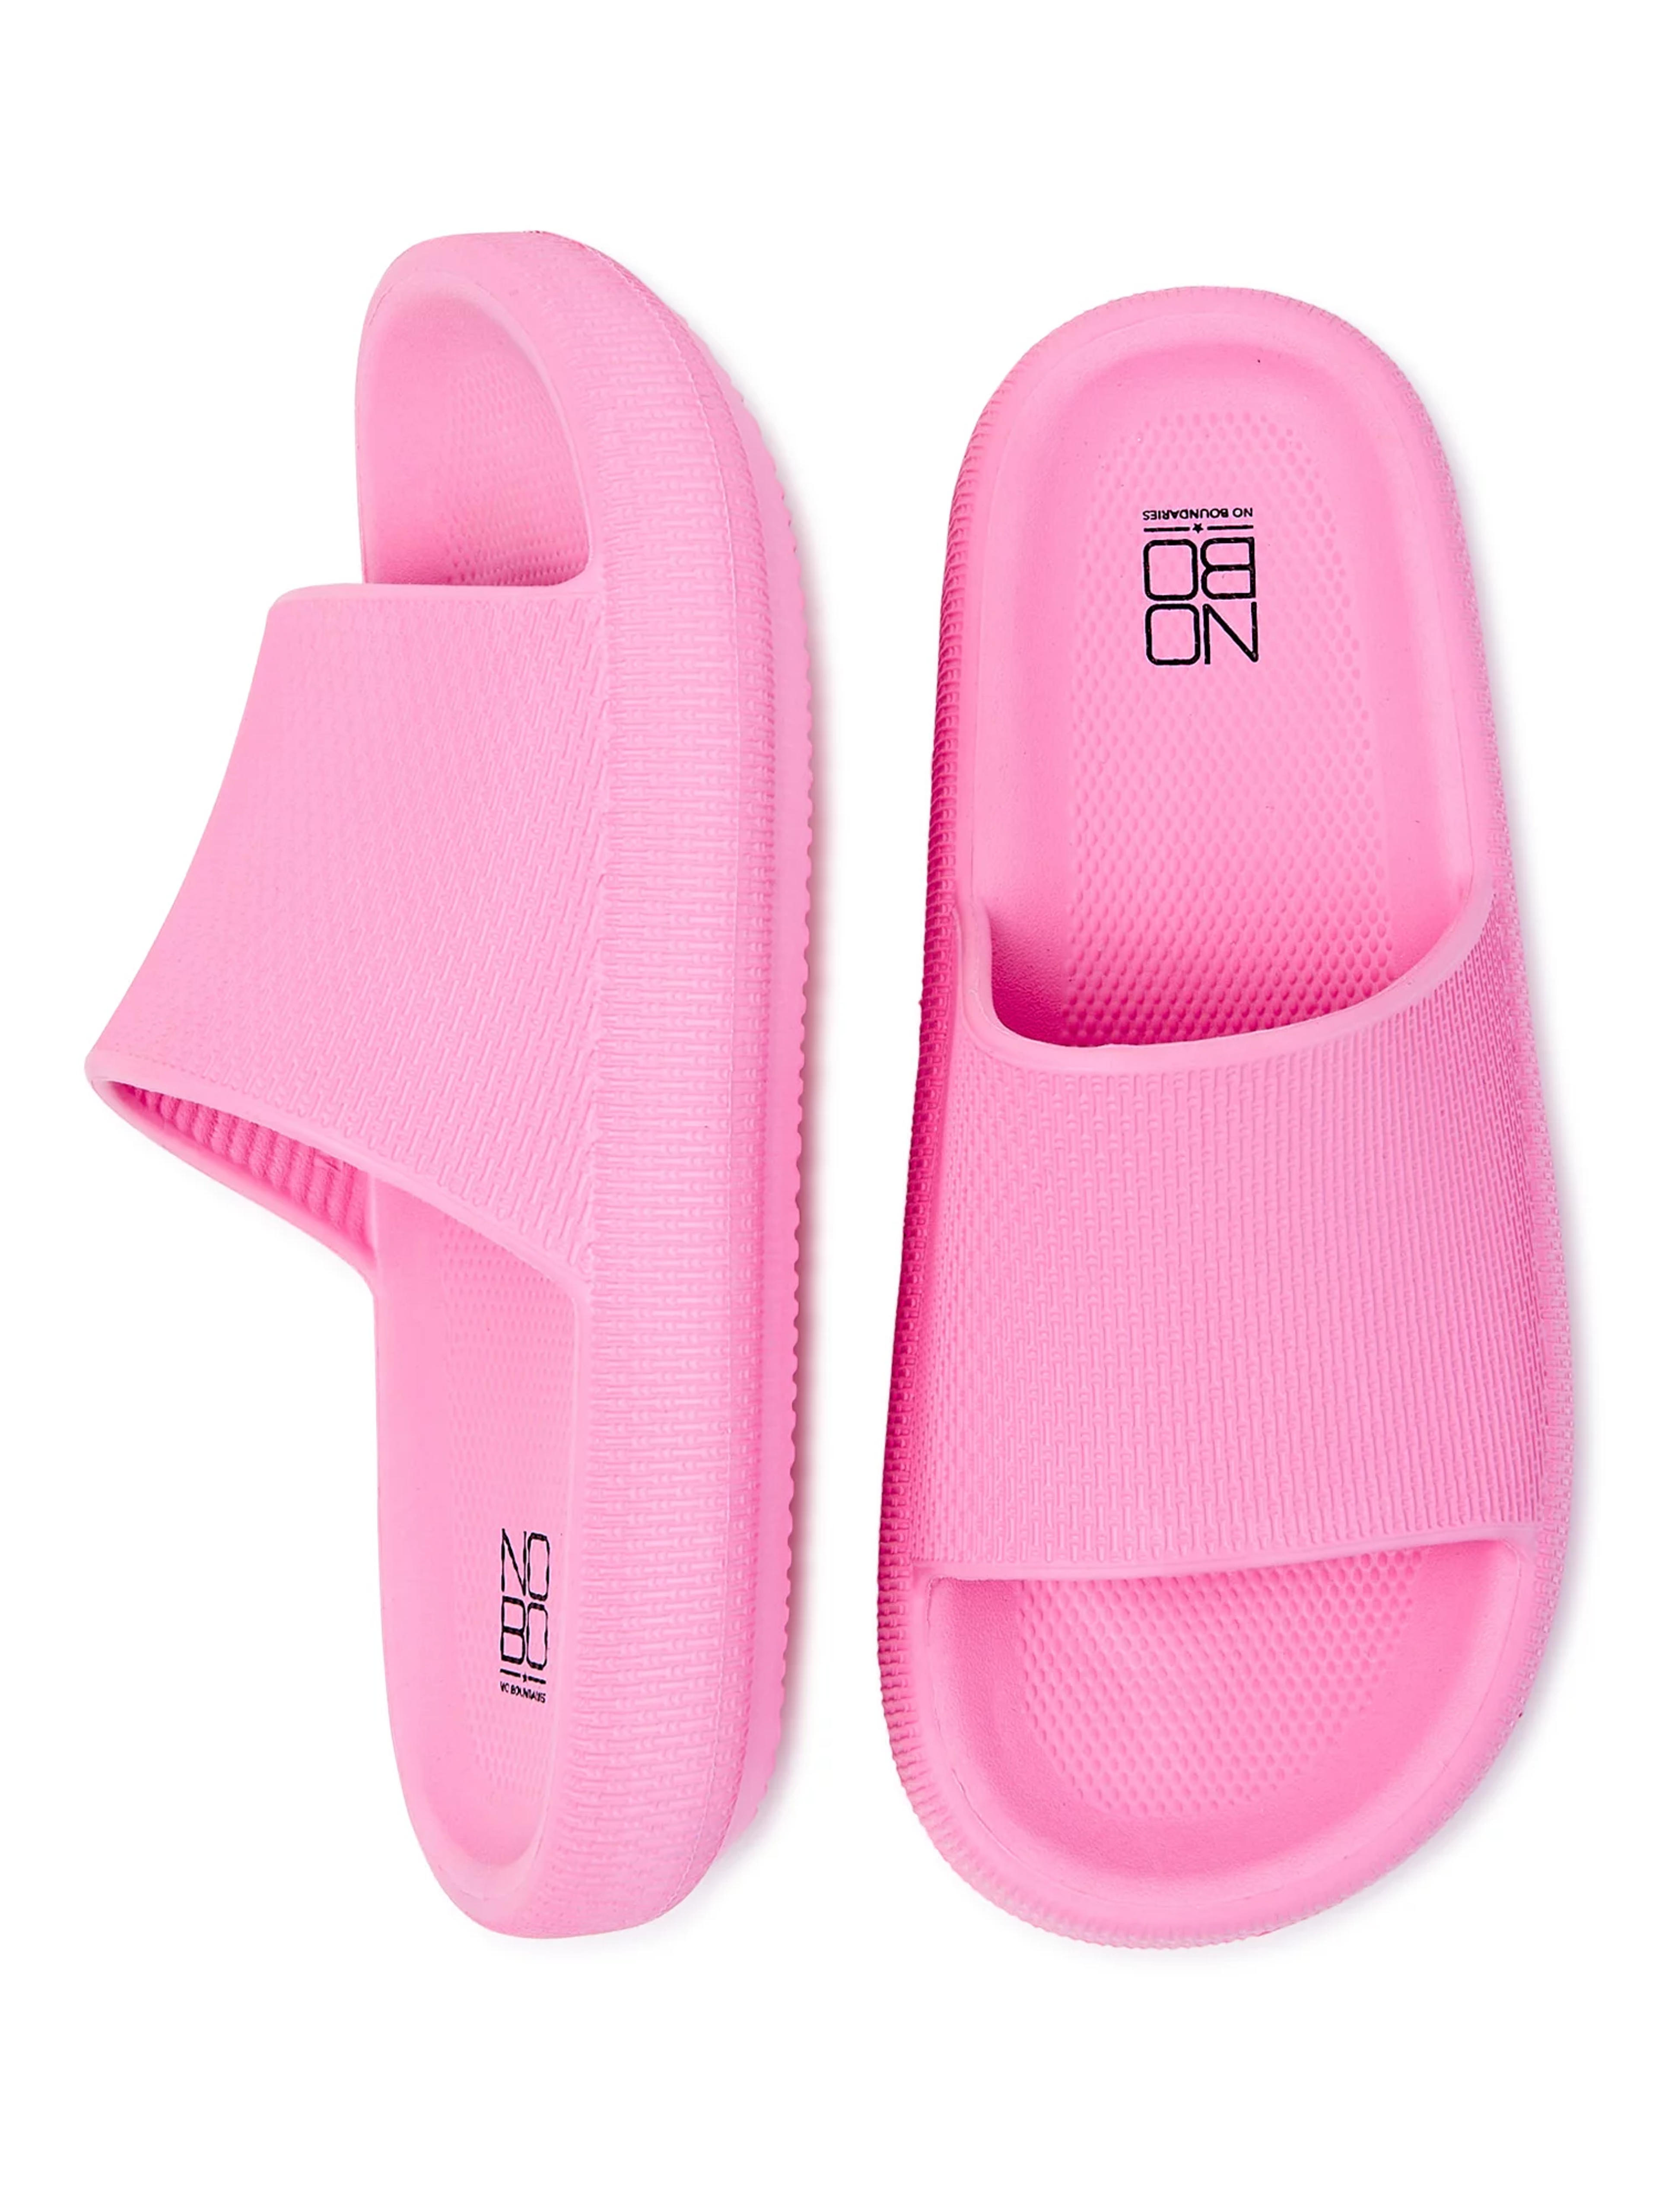 No Boundaries Women's Comfort Slide Sandals